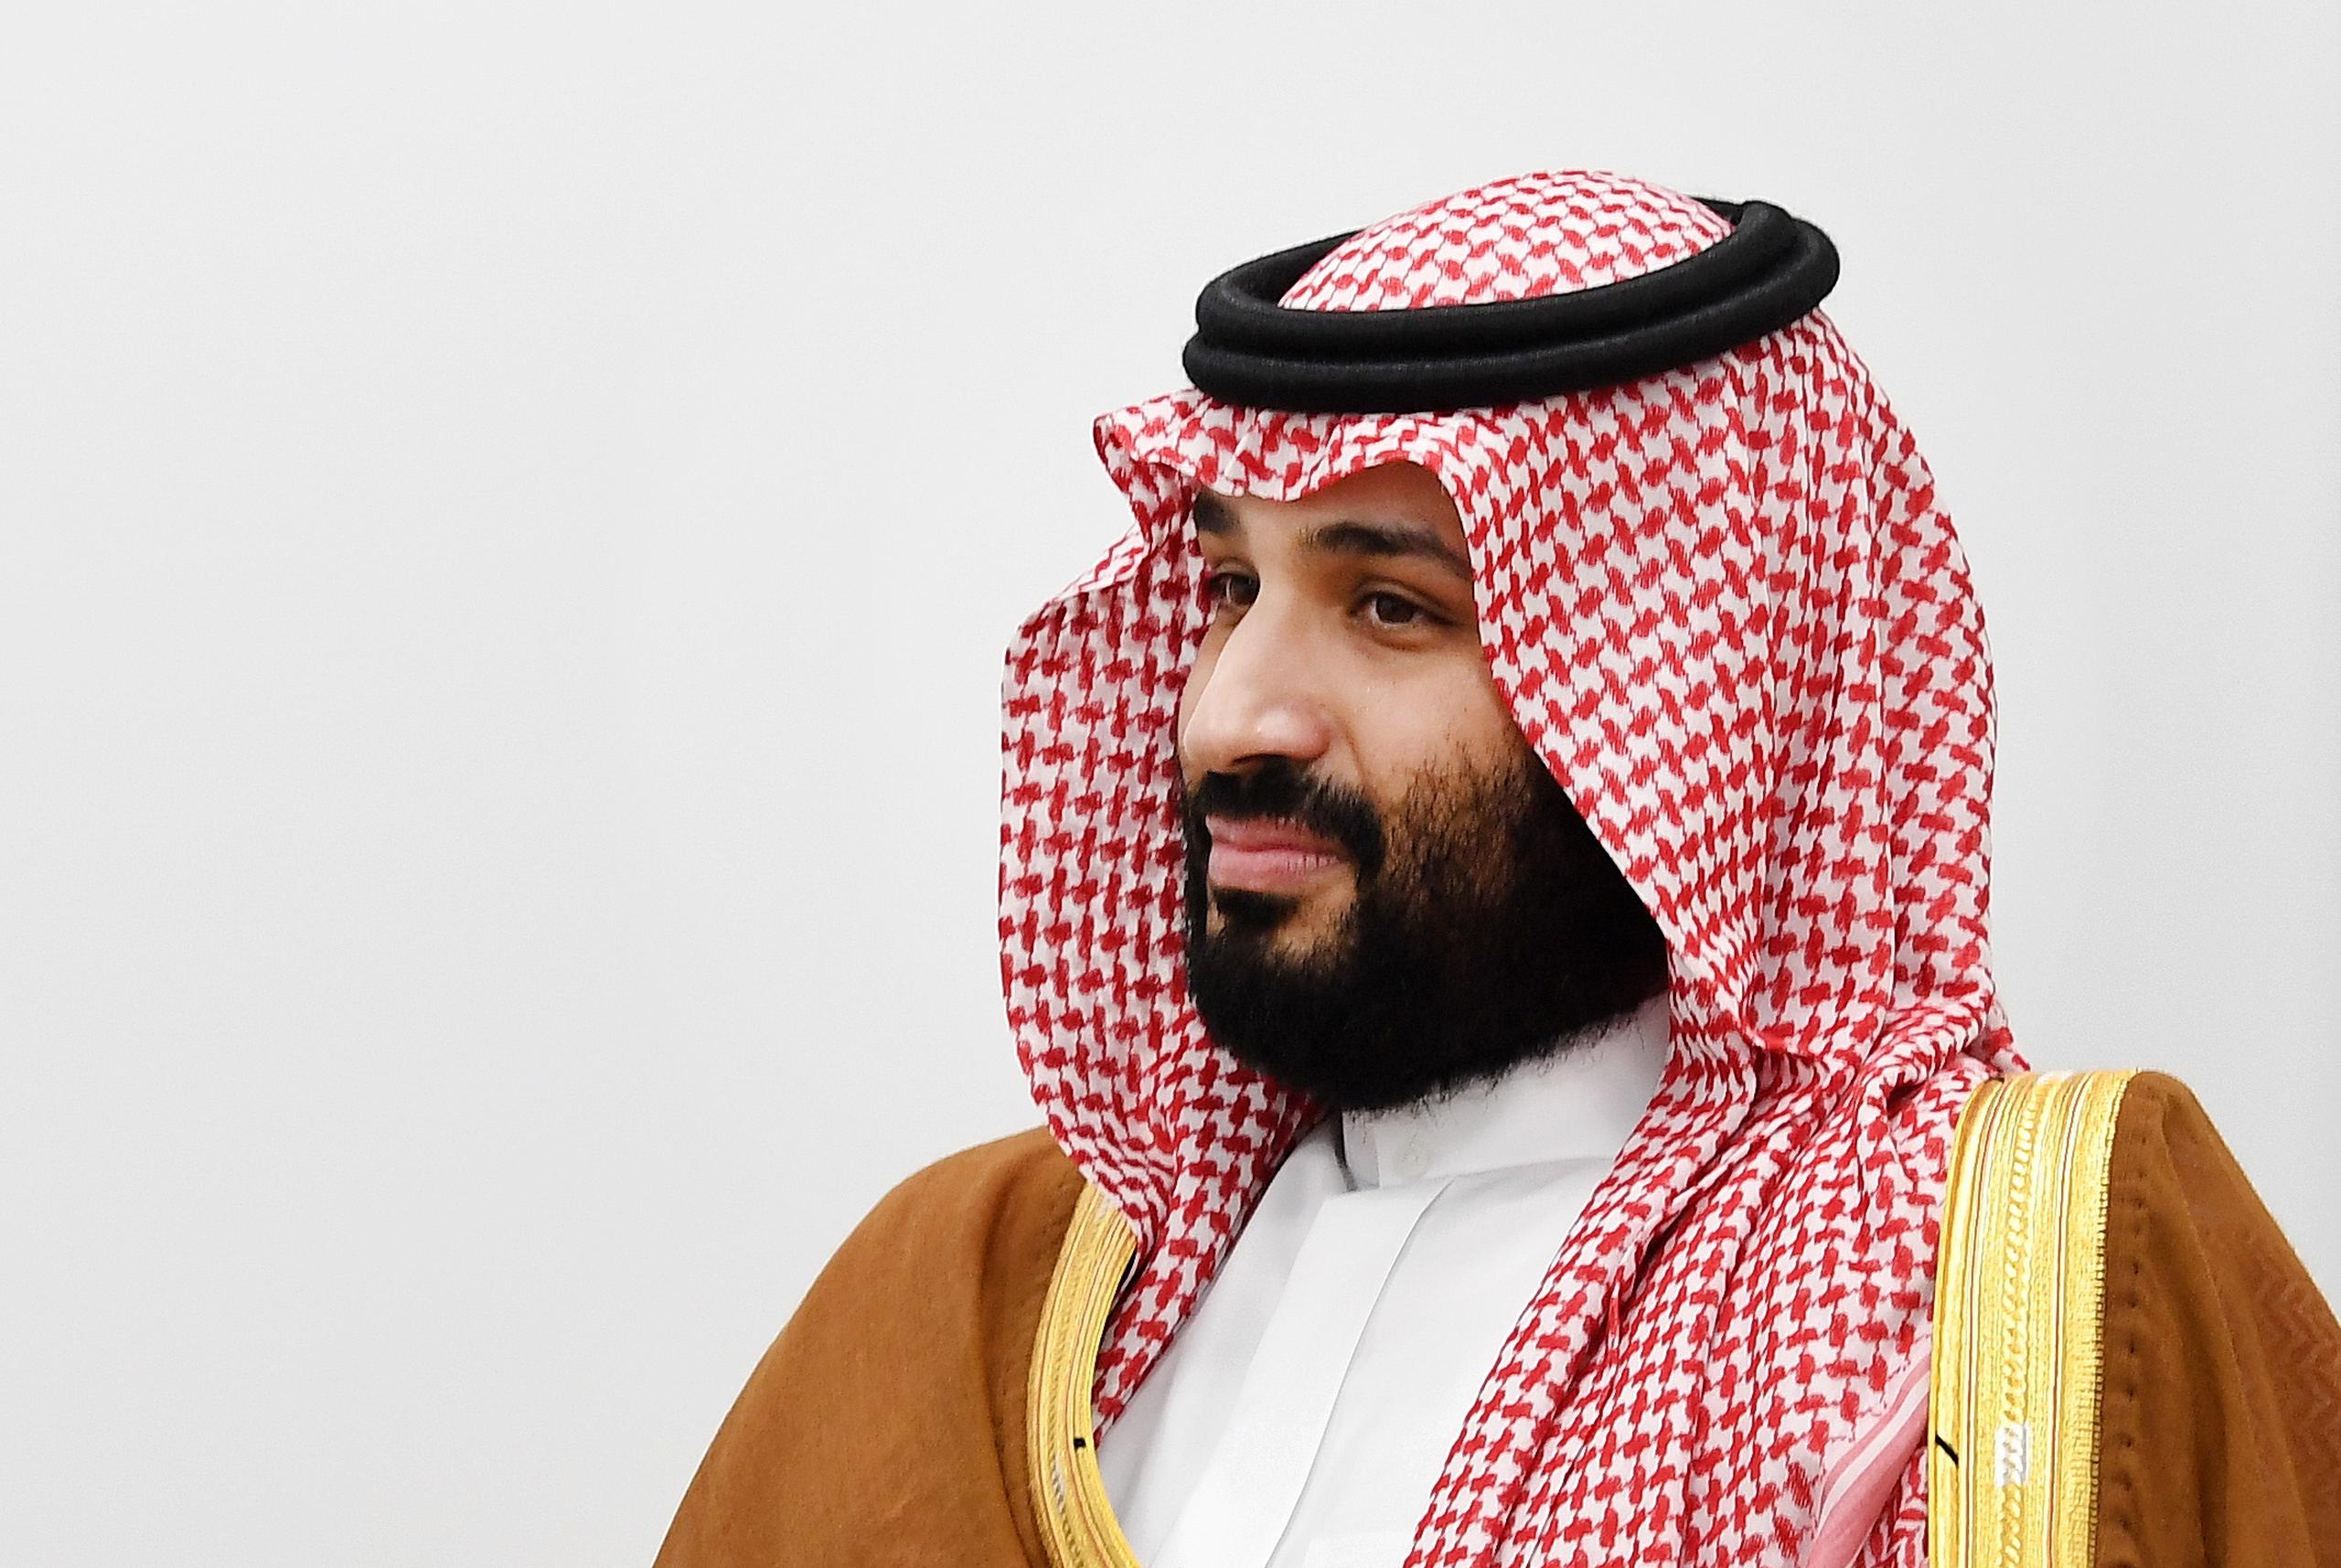 El príncipe heredero de Arabia Saudita, Mohamed bin Salmán (en la foto), habría autorizado la muerte de Jamal Khashoggi, periodista crítico de la familia real, en la embajada saudí en Istambul.